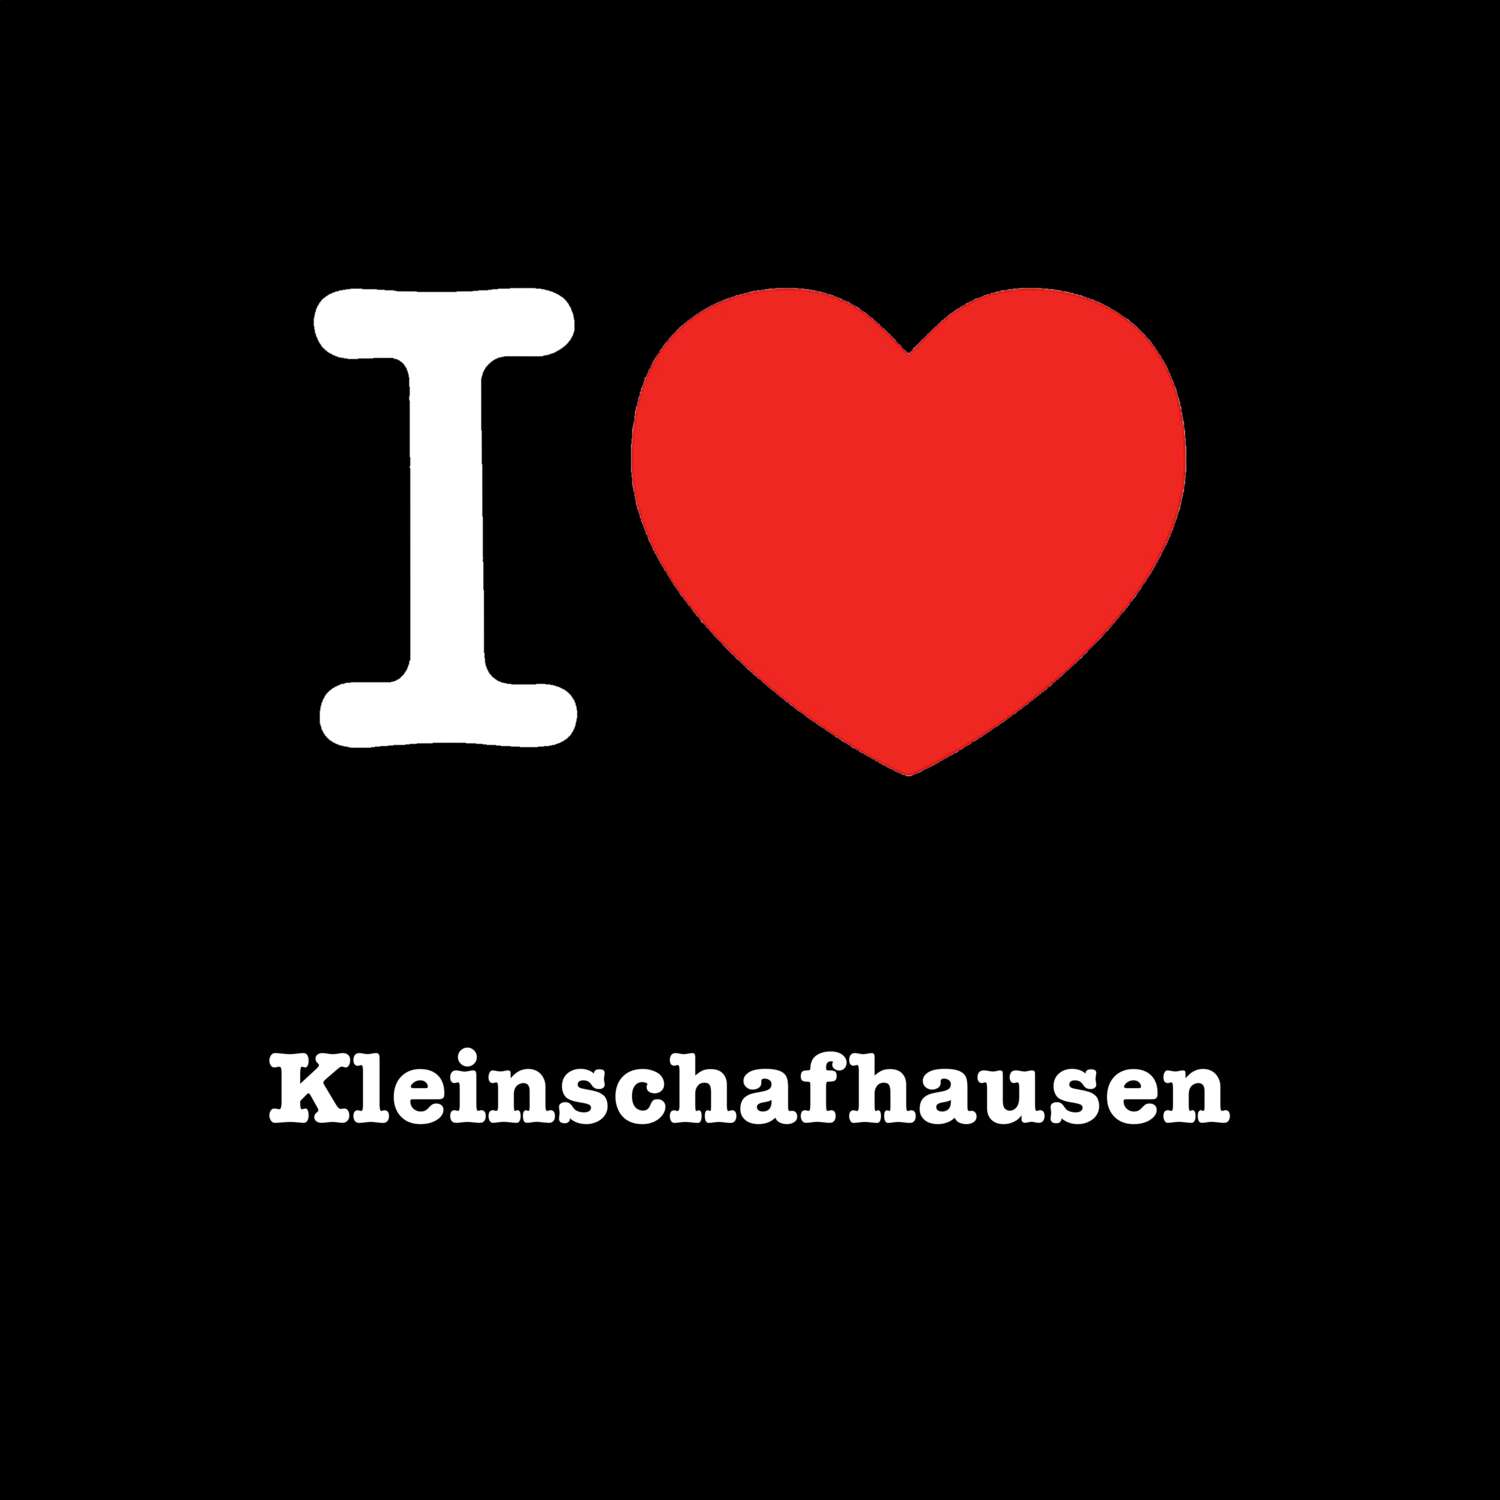 Kleinschafhausen T-Shirt »I love«